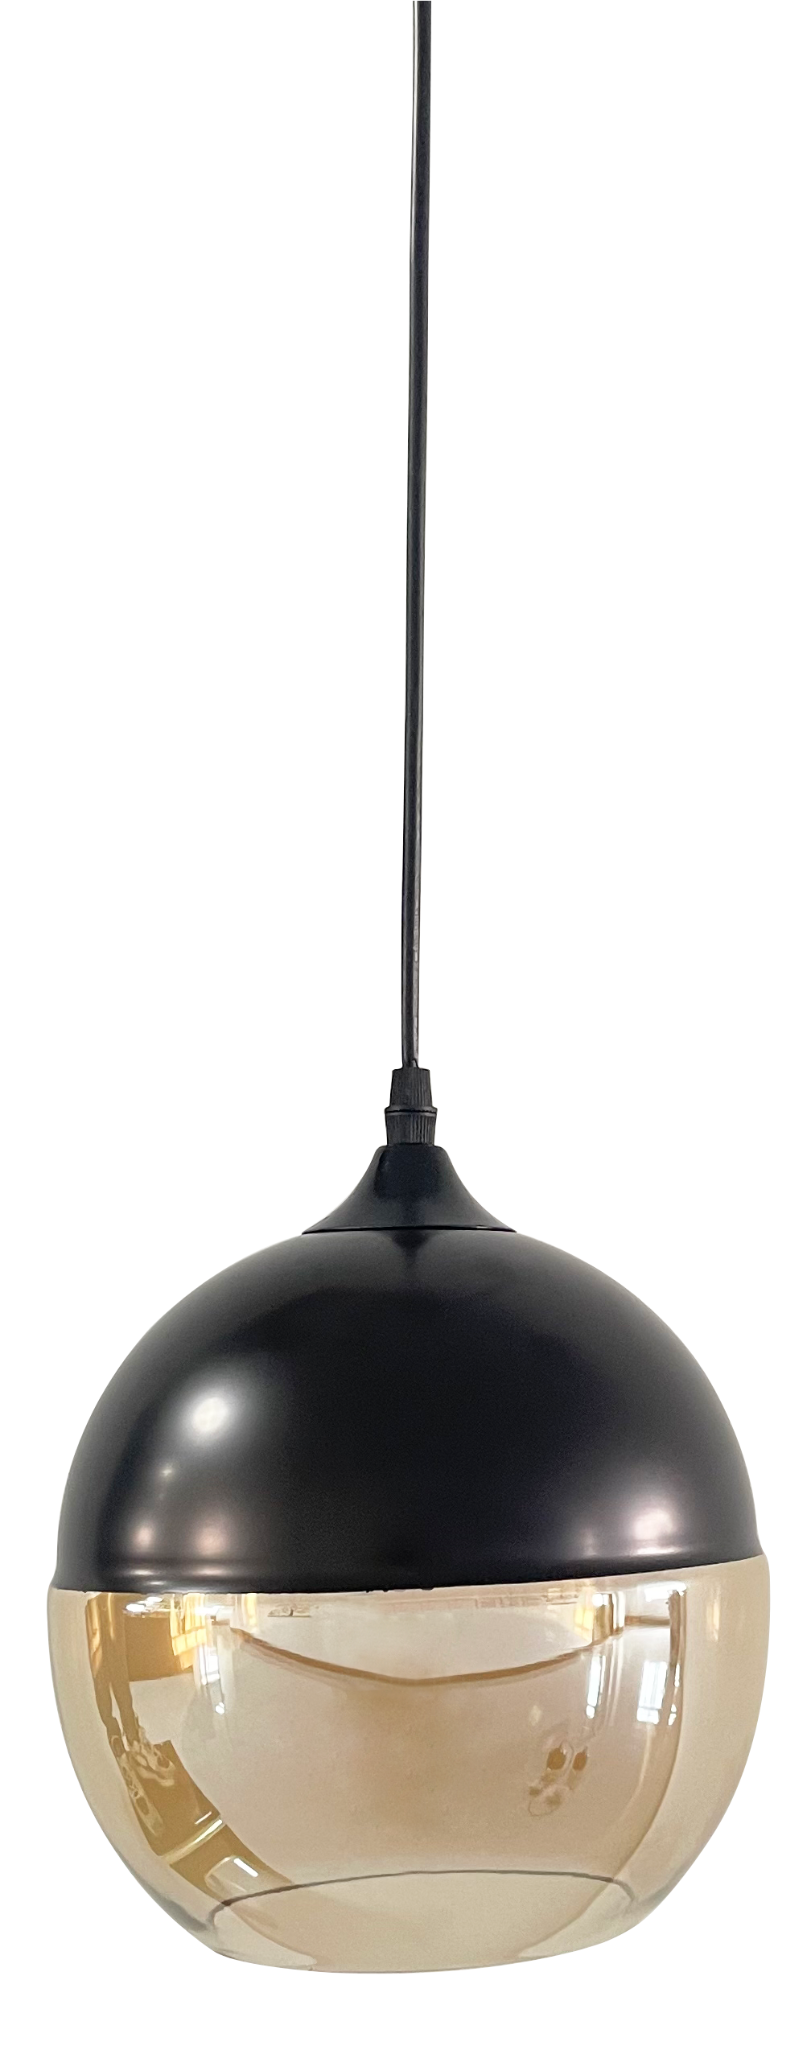 LED-Hängelampe in schwarz, kugelförmig, aus Glas, E27-Fassung, IP20, Ø20 cm